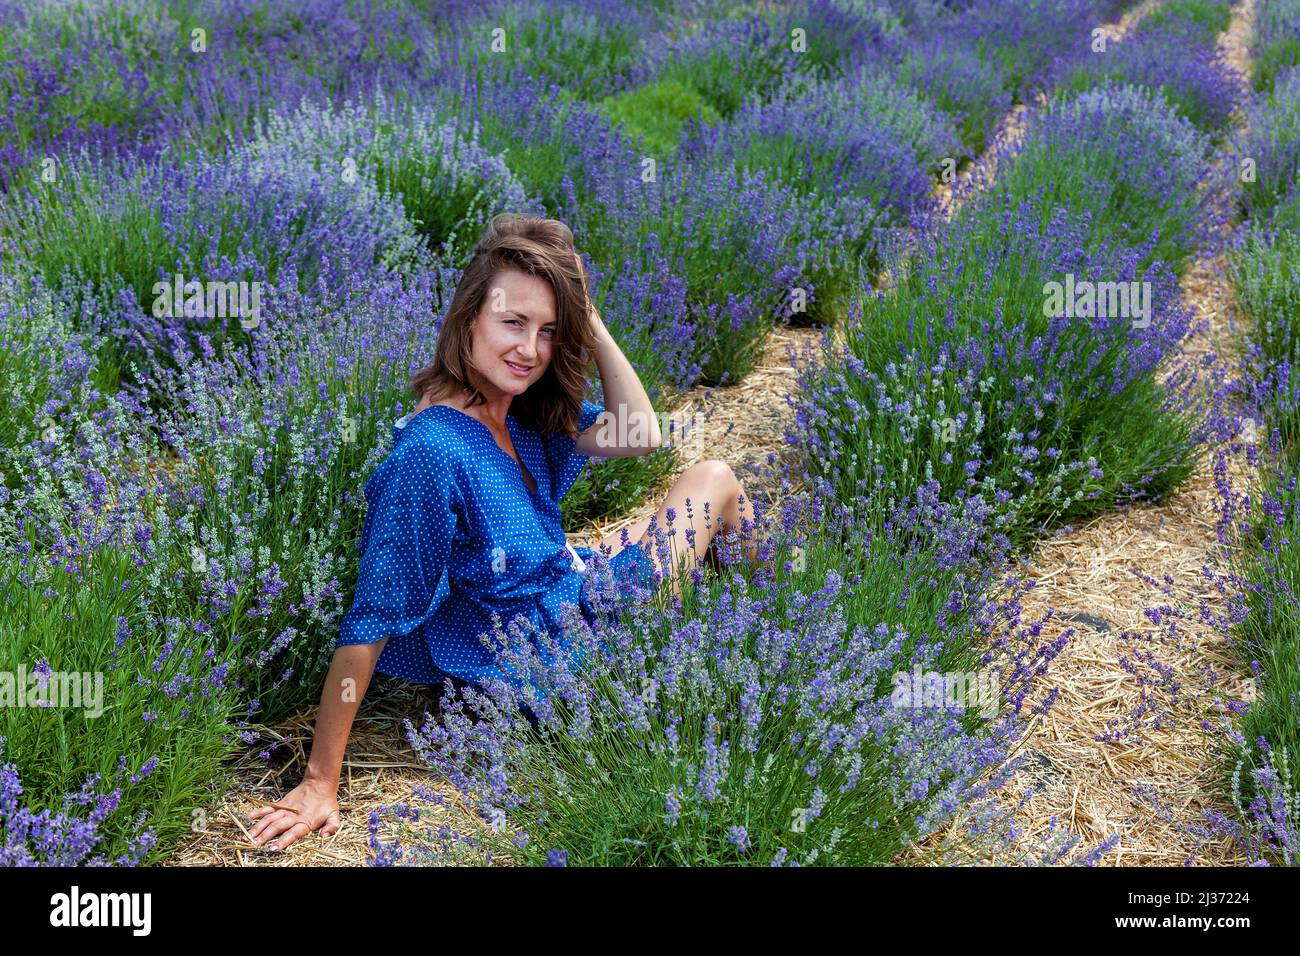 Las niñas en un vestido azul son fotografiadas en flores de lavanda púrpura en un campo Foto de stock